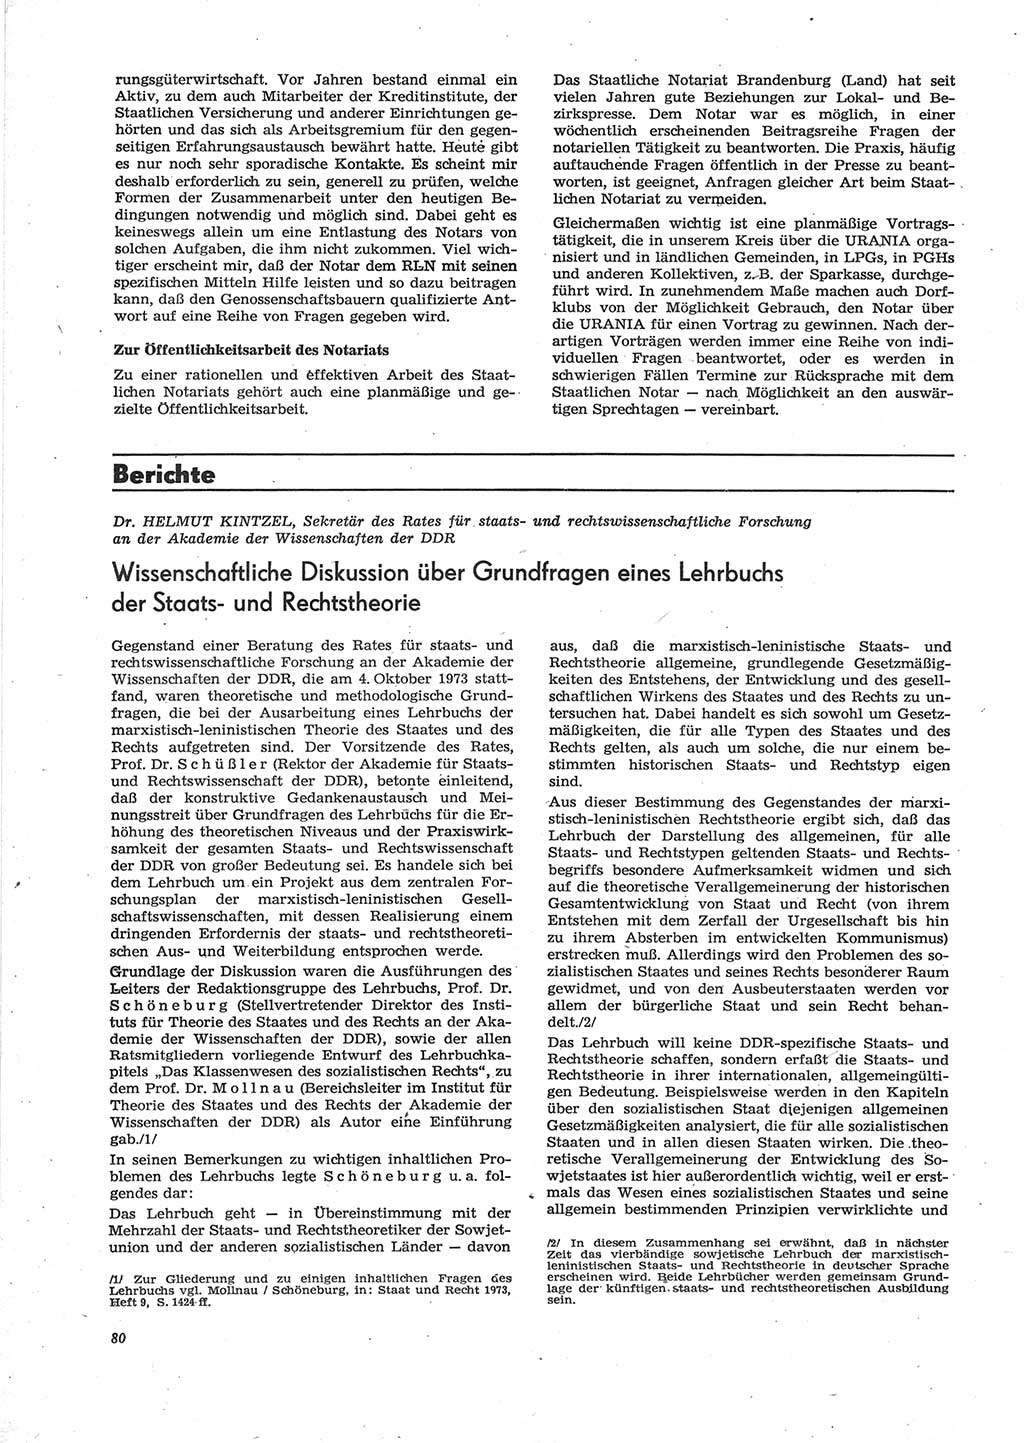 Neue Justiz (NJ), Zeitschrift für Recht und Rechtswissenschaft [Deutsche Demokratische Republik (DDR)], 28. Jahrgang 1974, Seite 80 (NJ DDR 1974, S. 80)